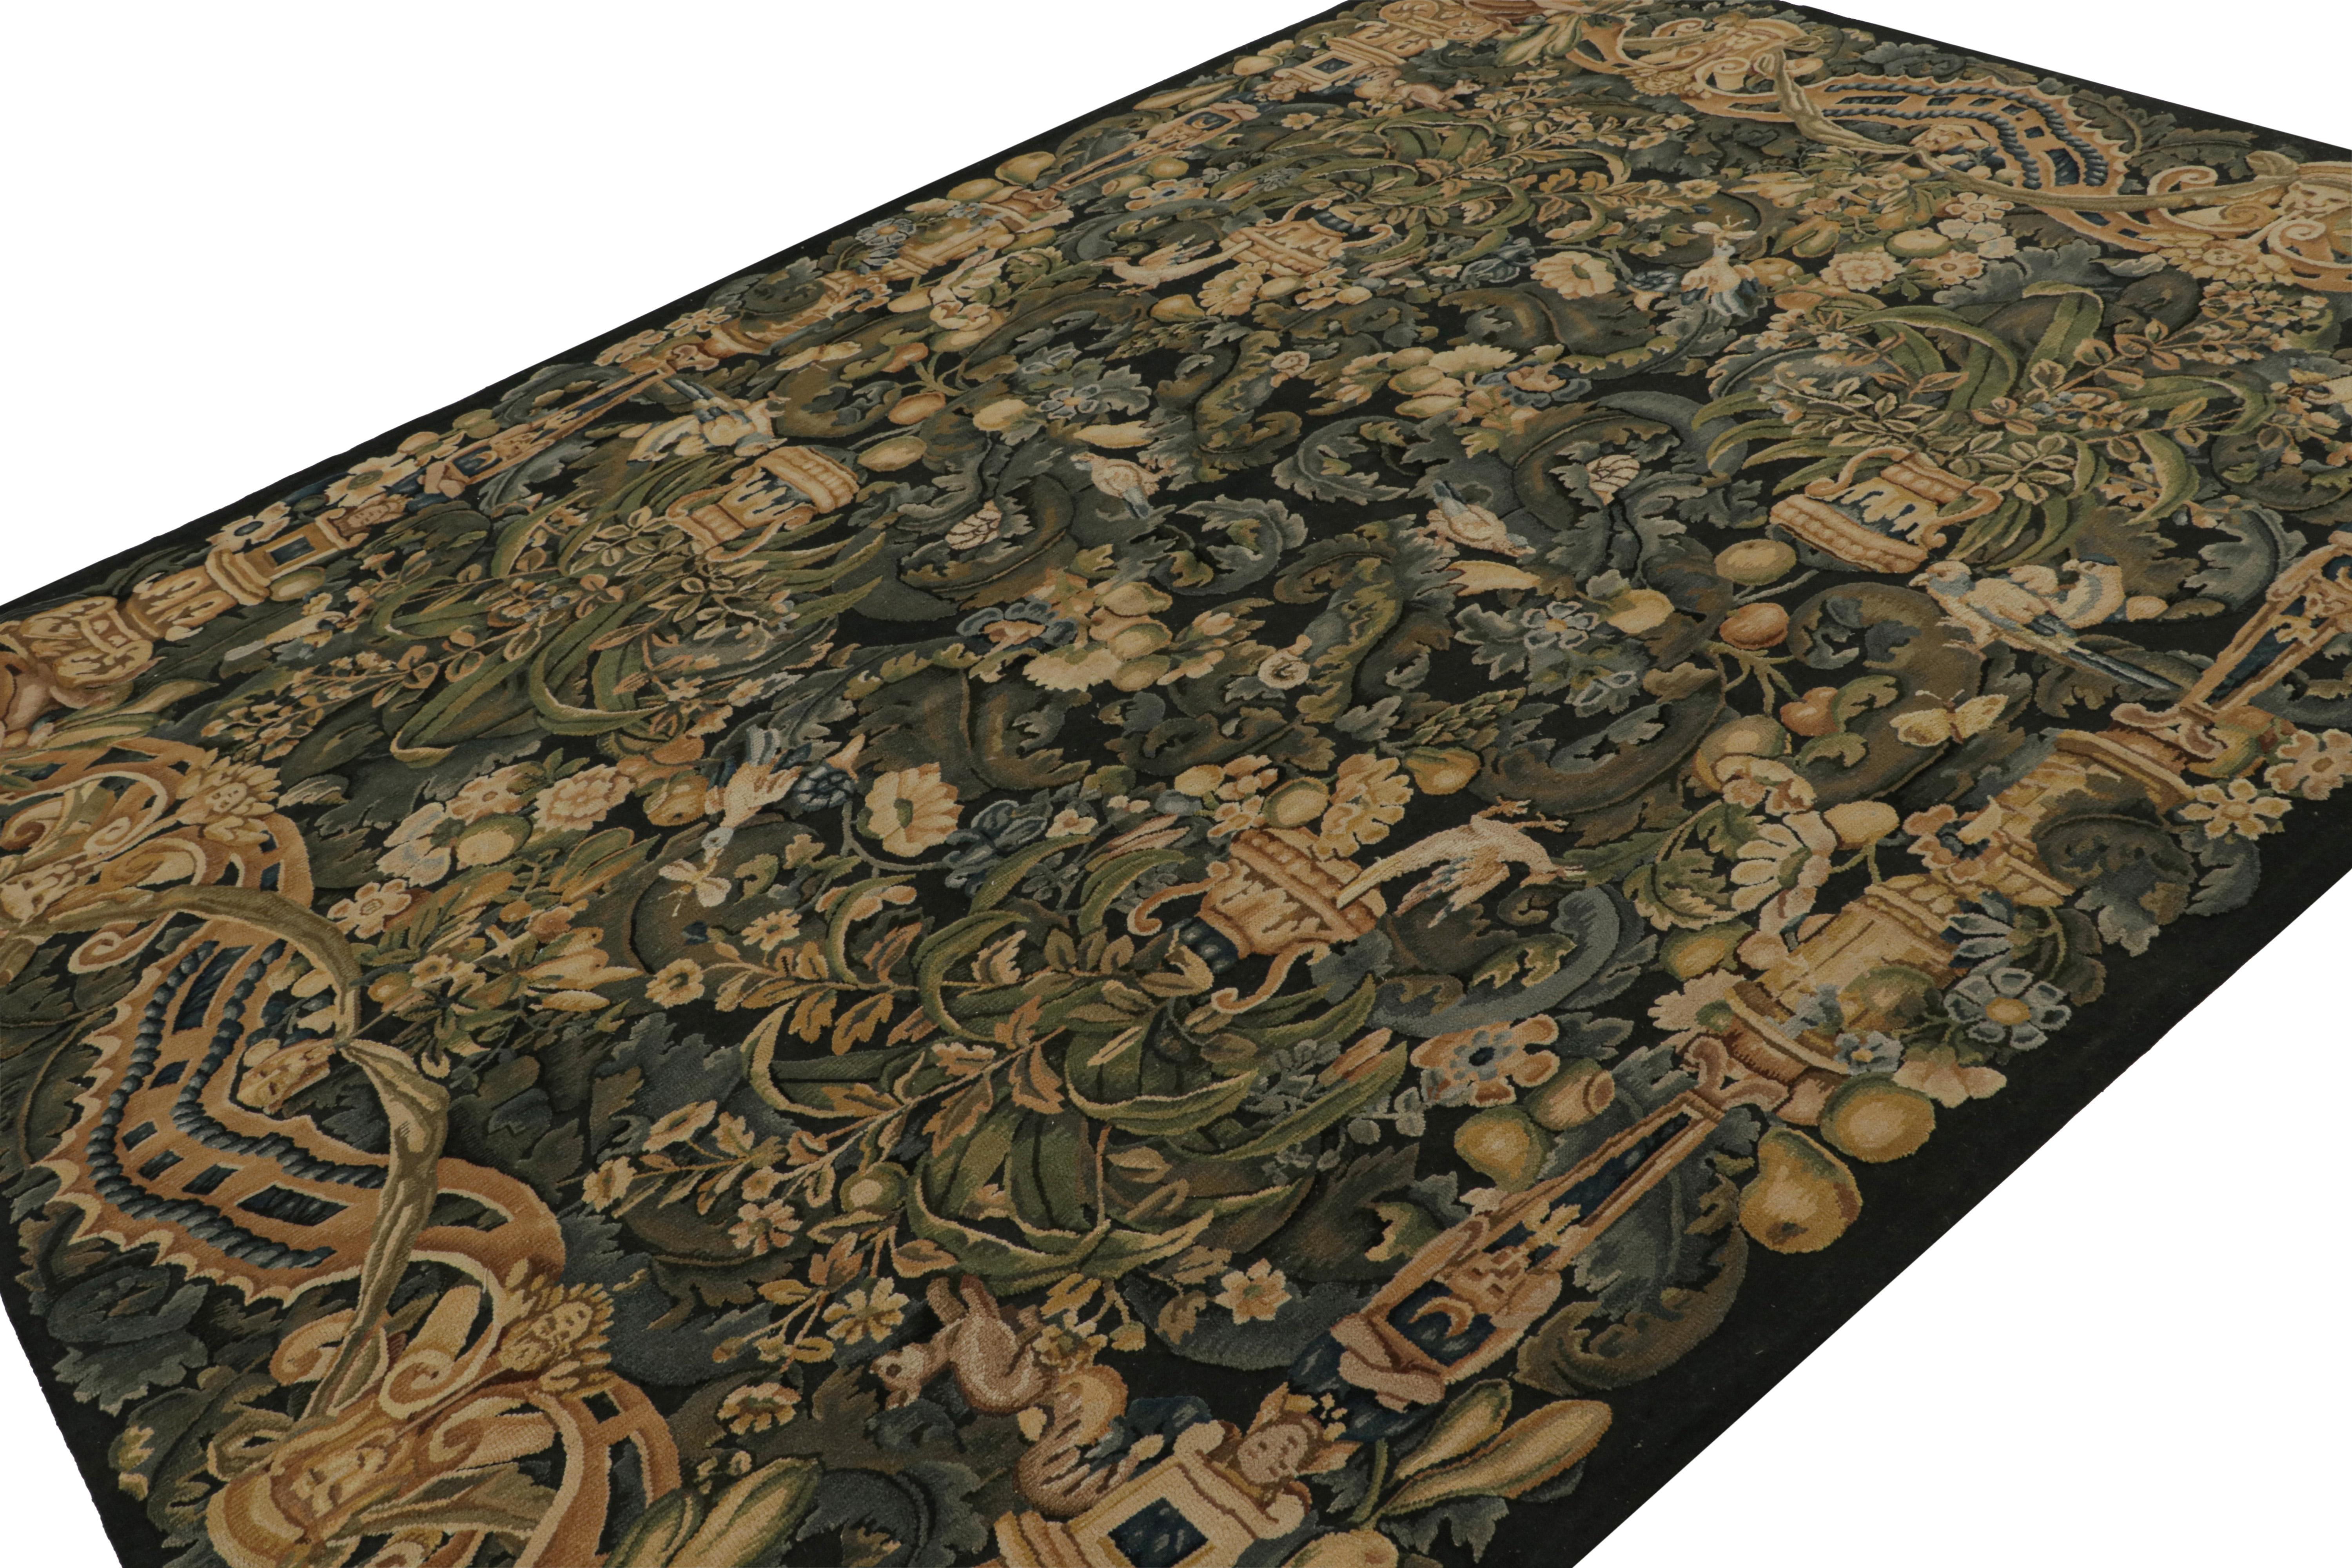 Dieser handgeknüpfte Wollteppich im Format 8x11 wurde von englischen Tudor-Teppichen und -Wandteppichen inspiriert, wobei ein bestimmter Stil unter ihnen als Wappenteppich bezeichnet wurde. Das Design zeigt dichte florale Muster und Bilder in